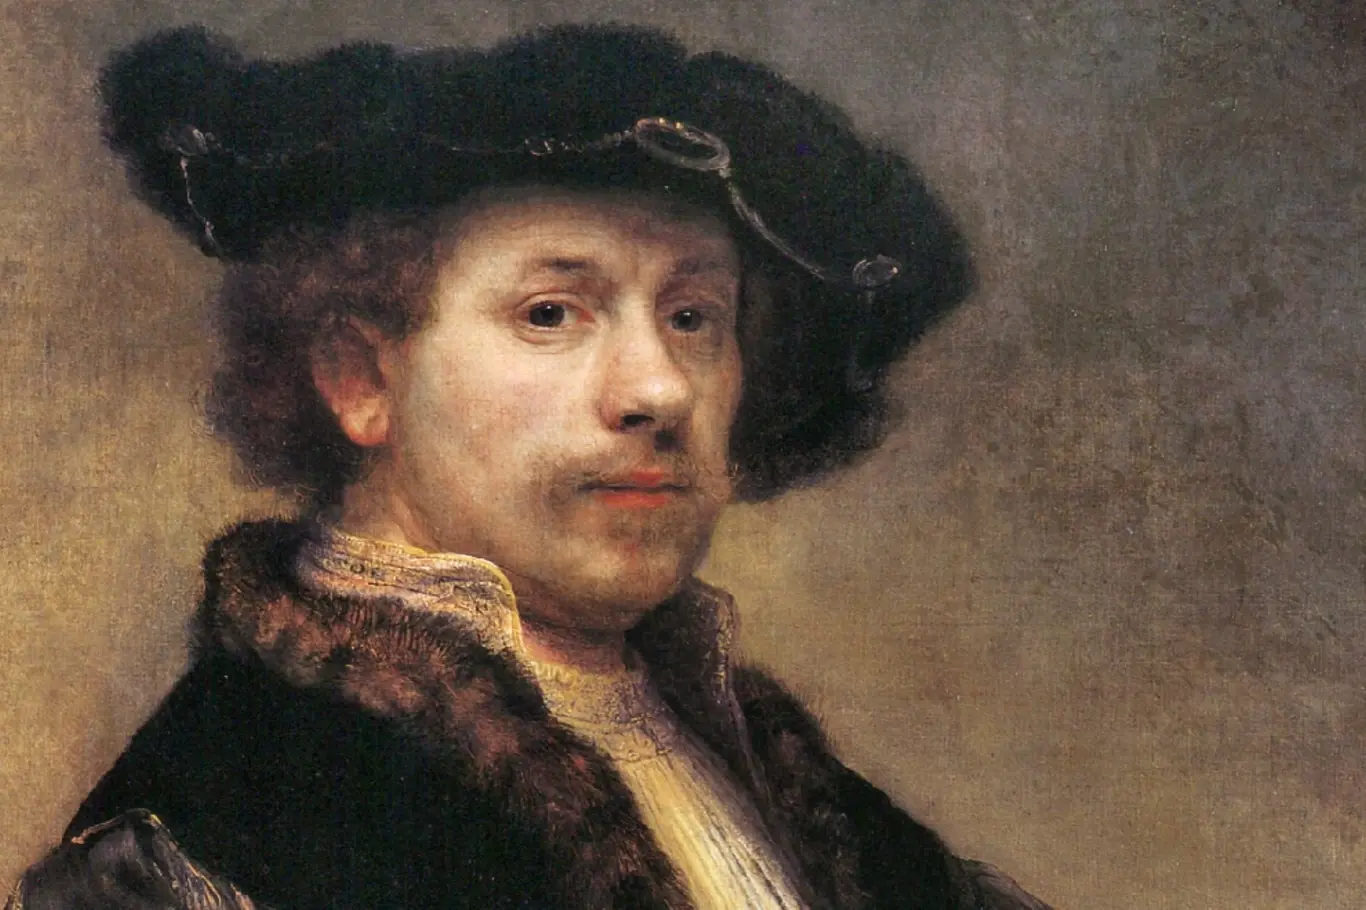 Rembrandt van Rijn: Autoportrét, 1640